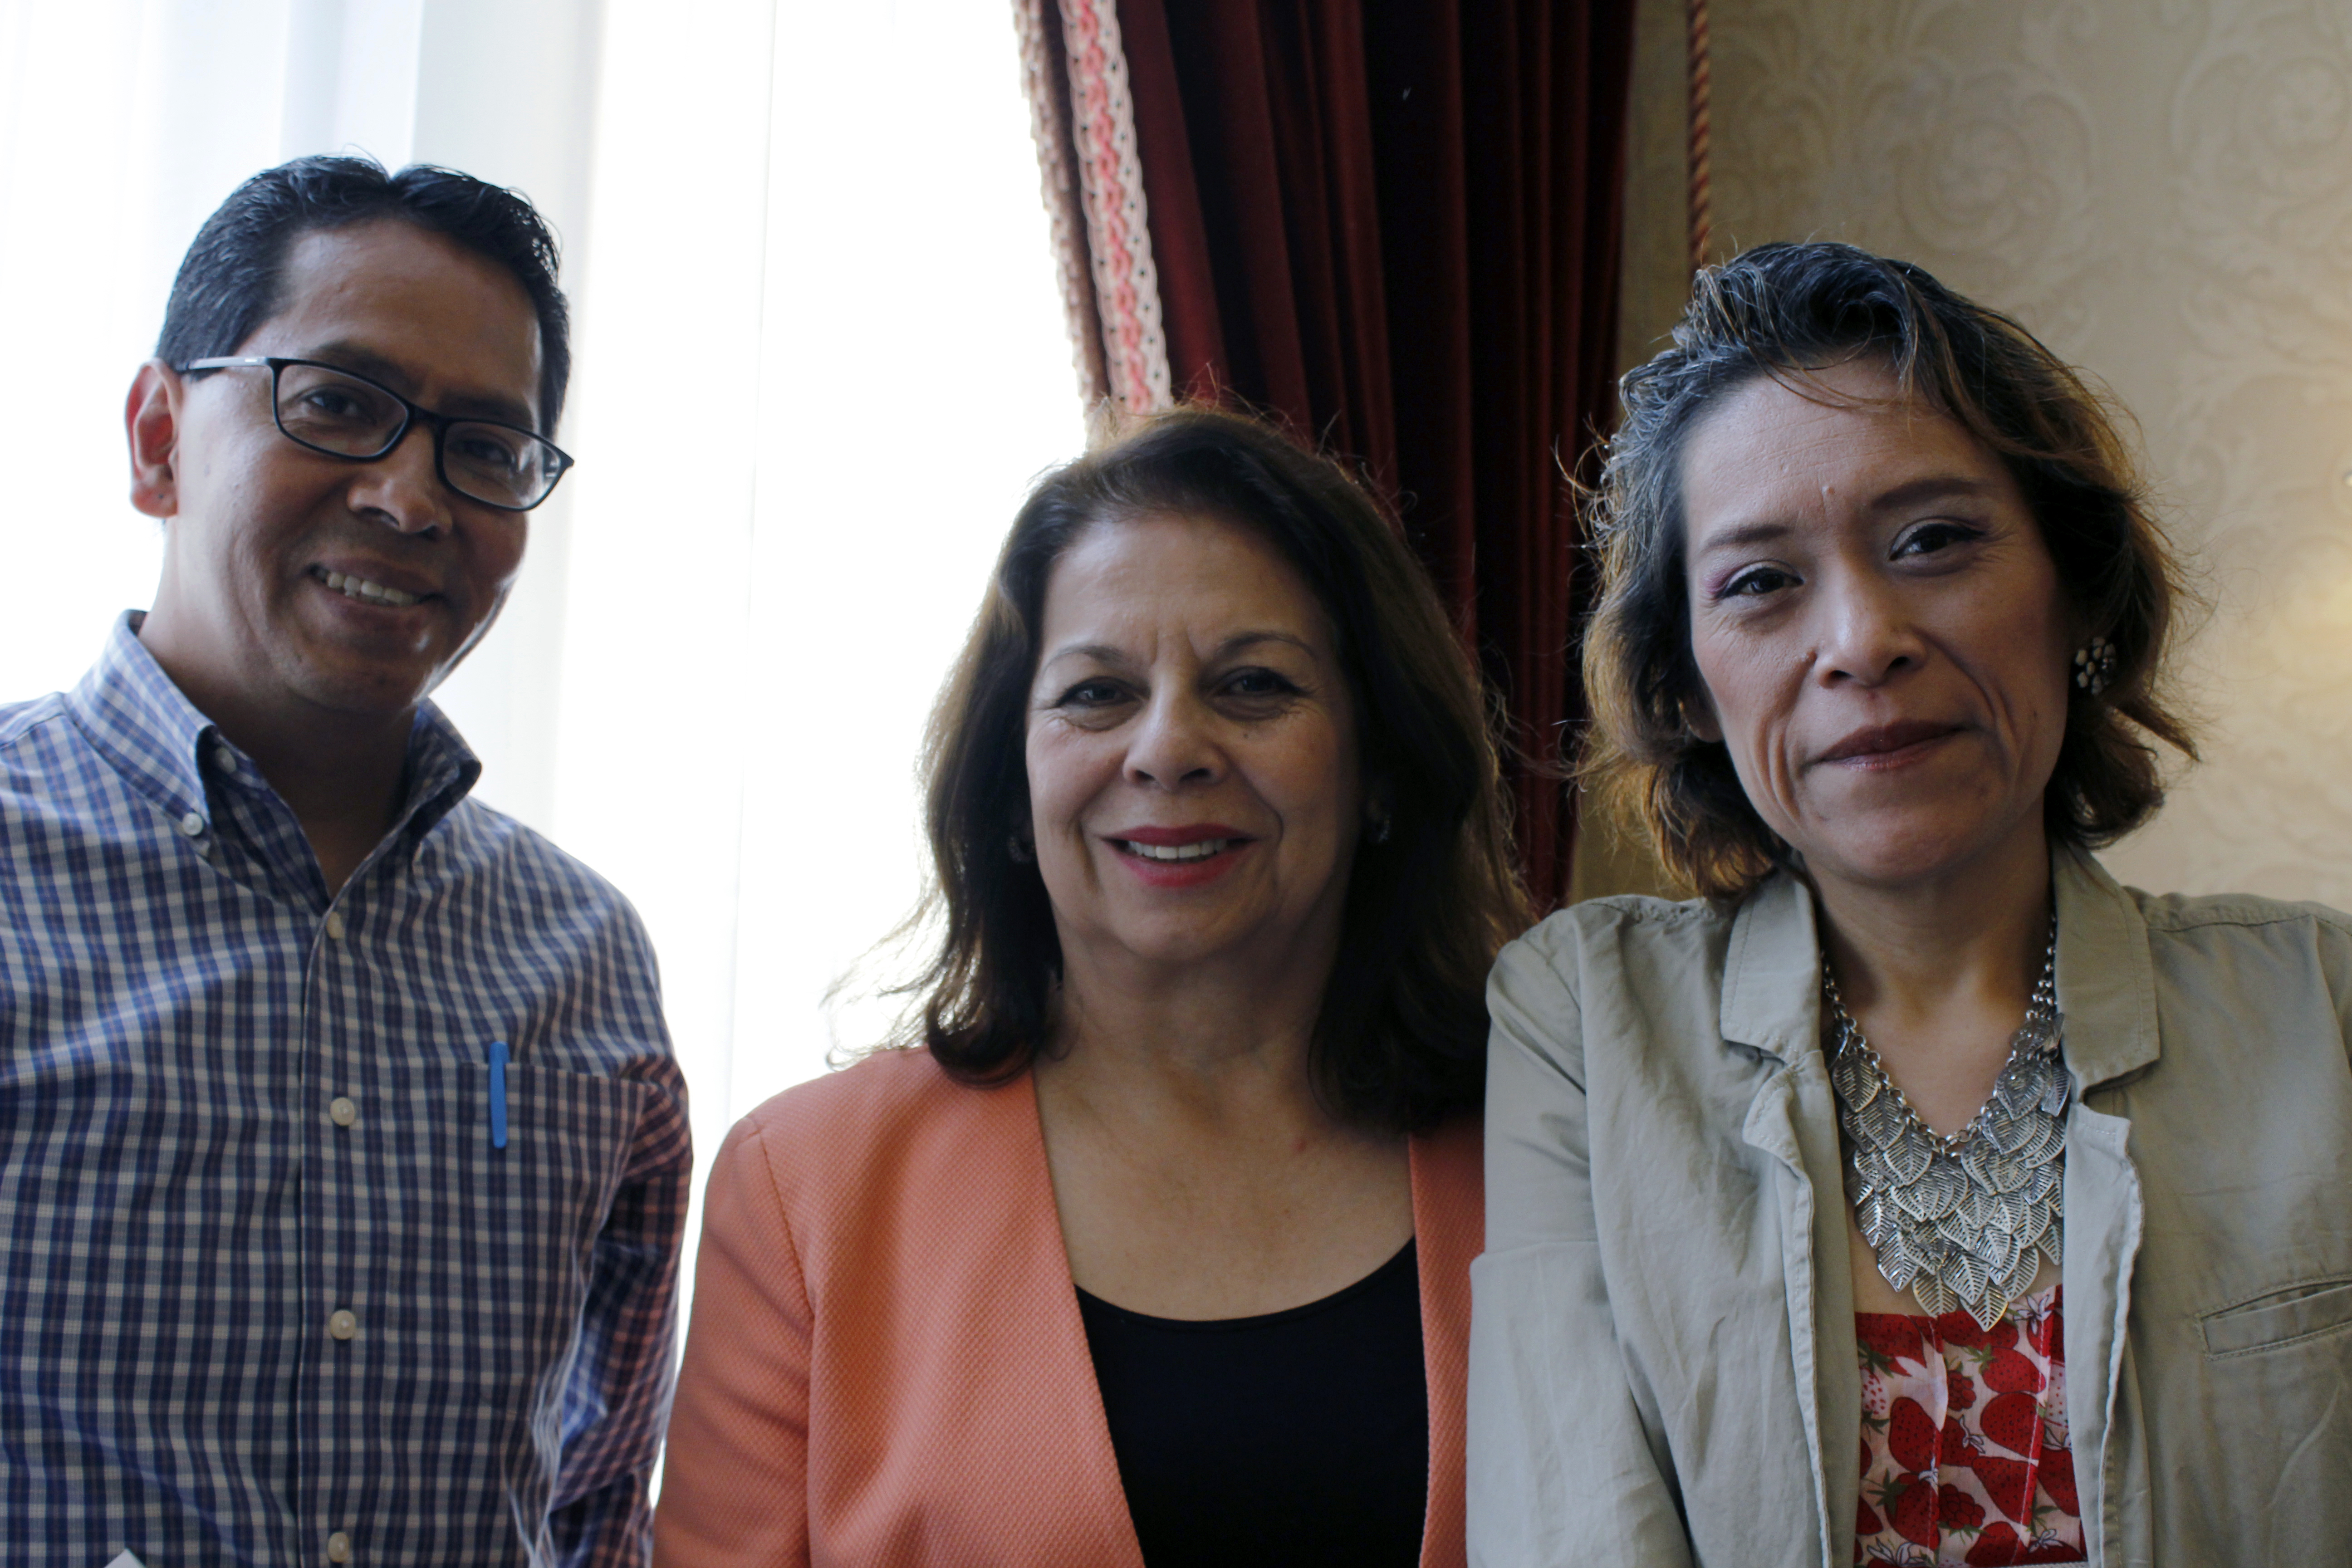 At the centre, Virginia Molina Cuevas (PAHO representative) with patients Patricio Gonzáles and María Teresa Romero Nolasco